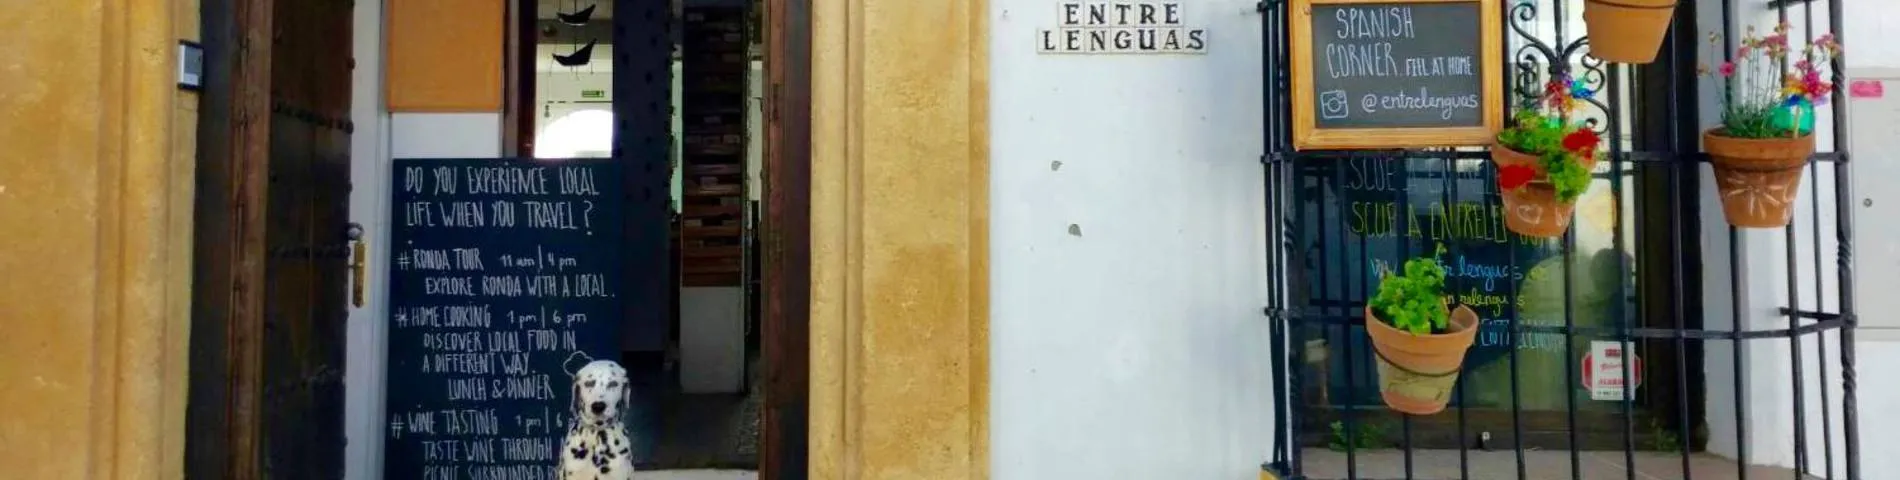 Imatge 1 de l'escola Escuela Entrelenguas